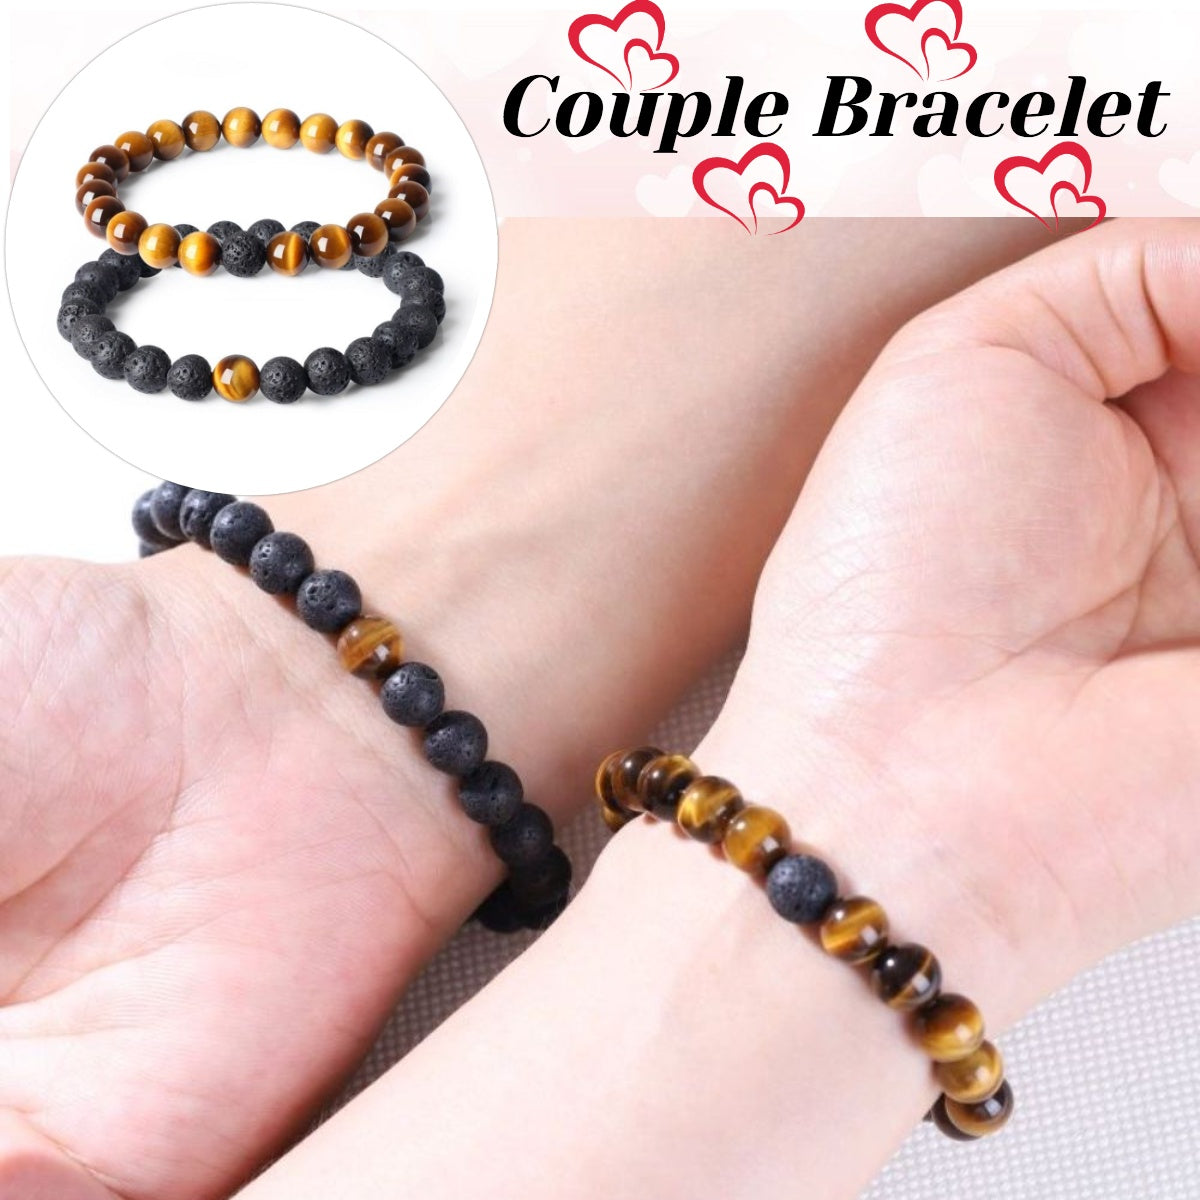 Couple bracelets - a symbolic gift for Valentine's Day - Mistone.eu